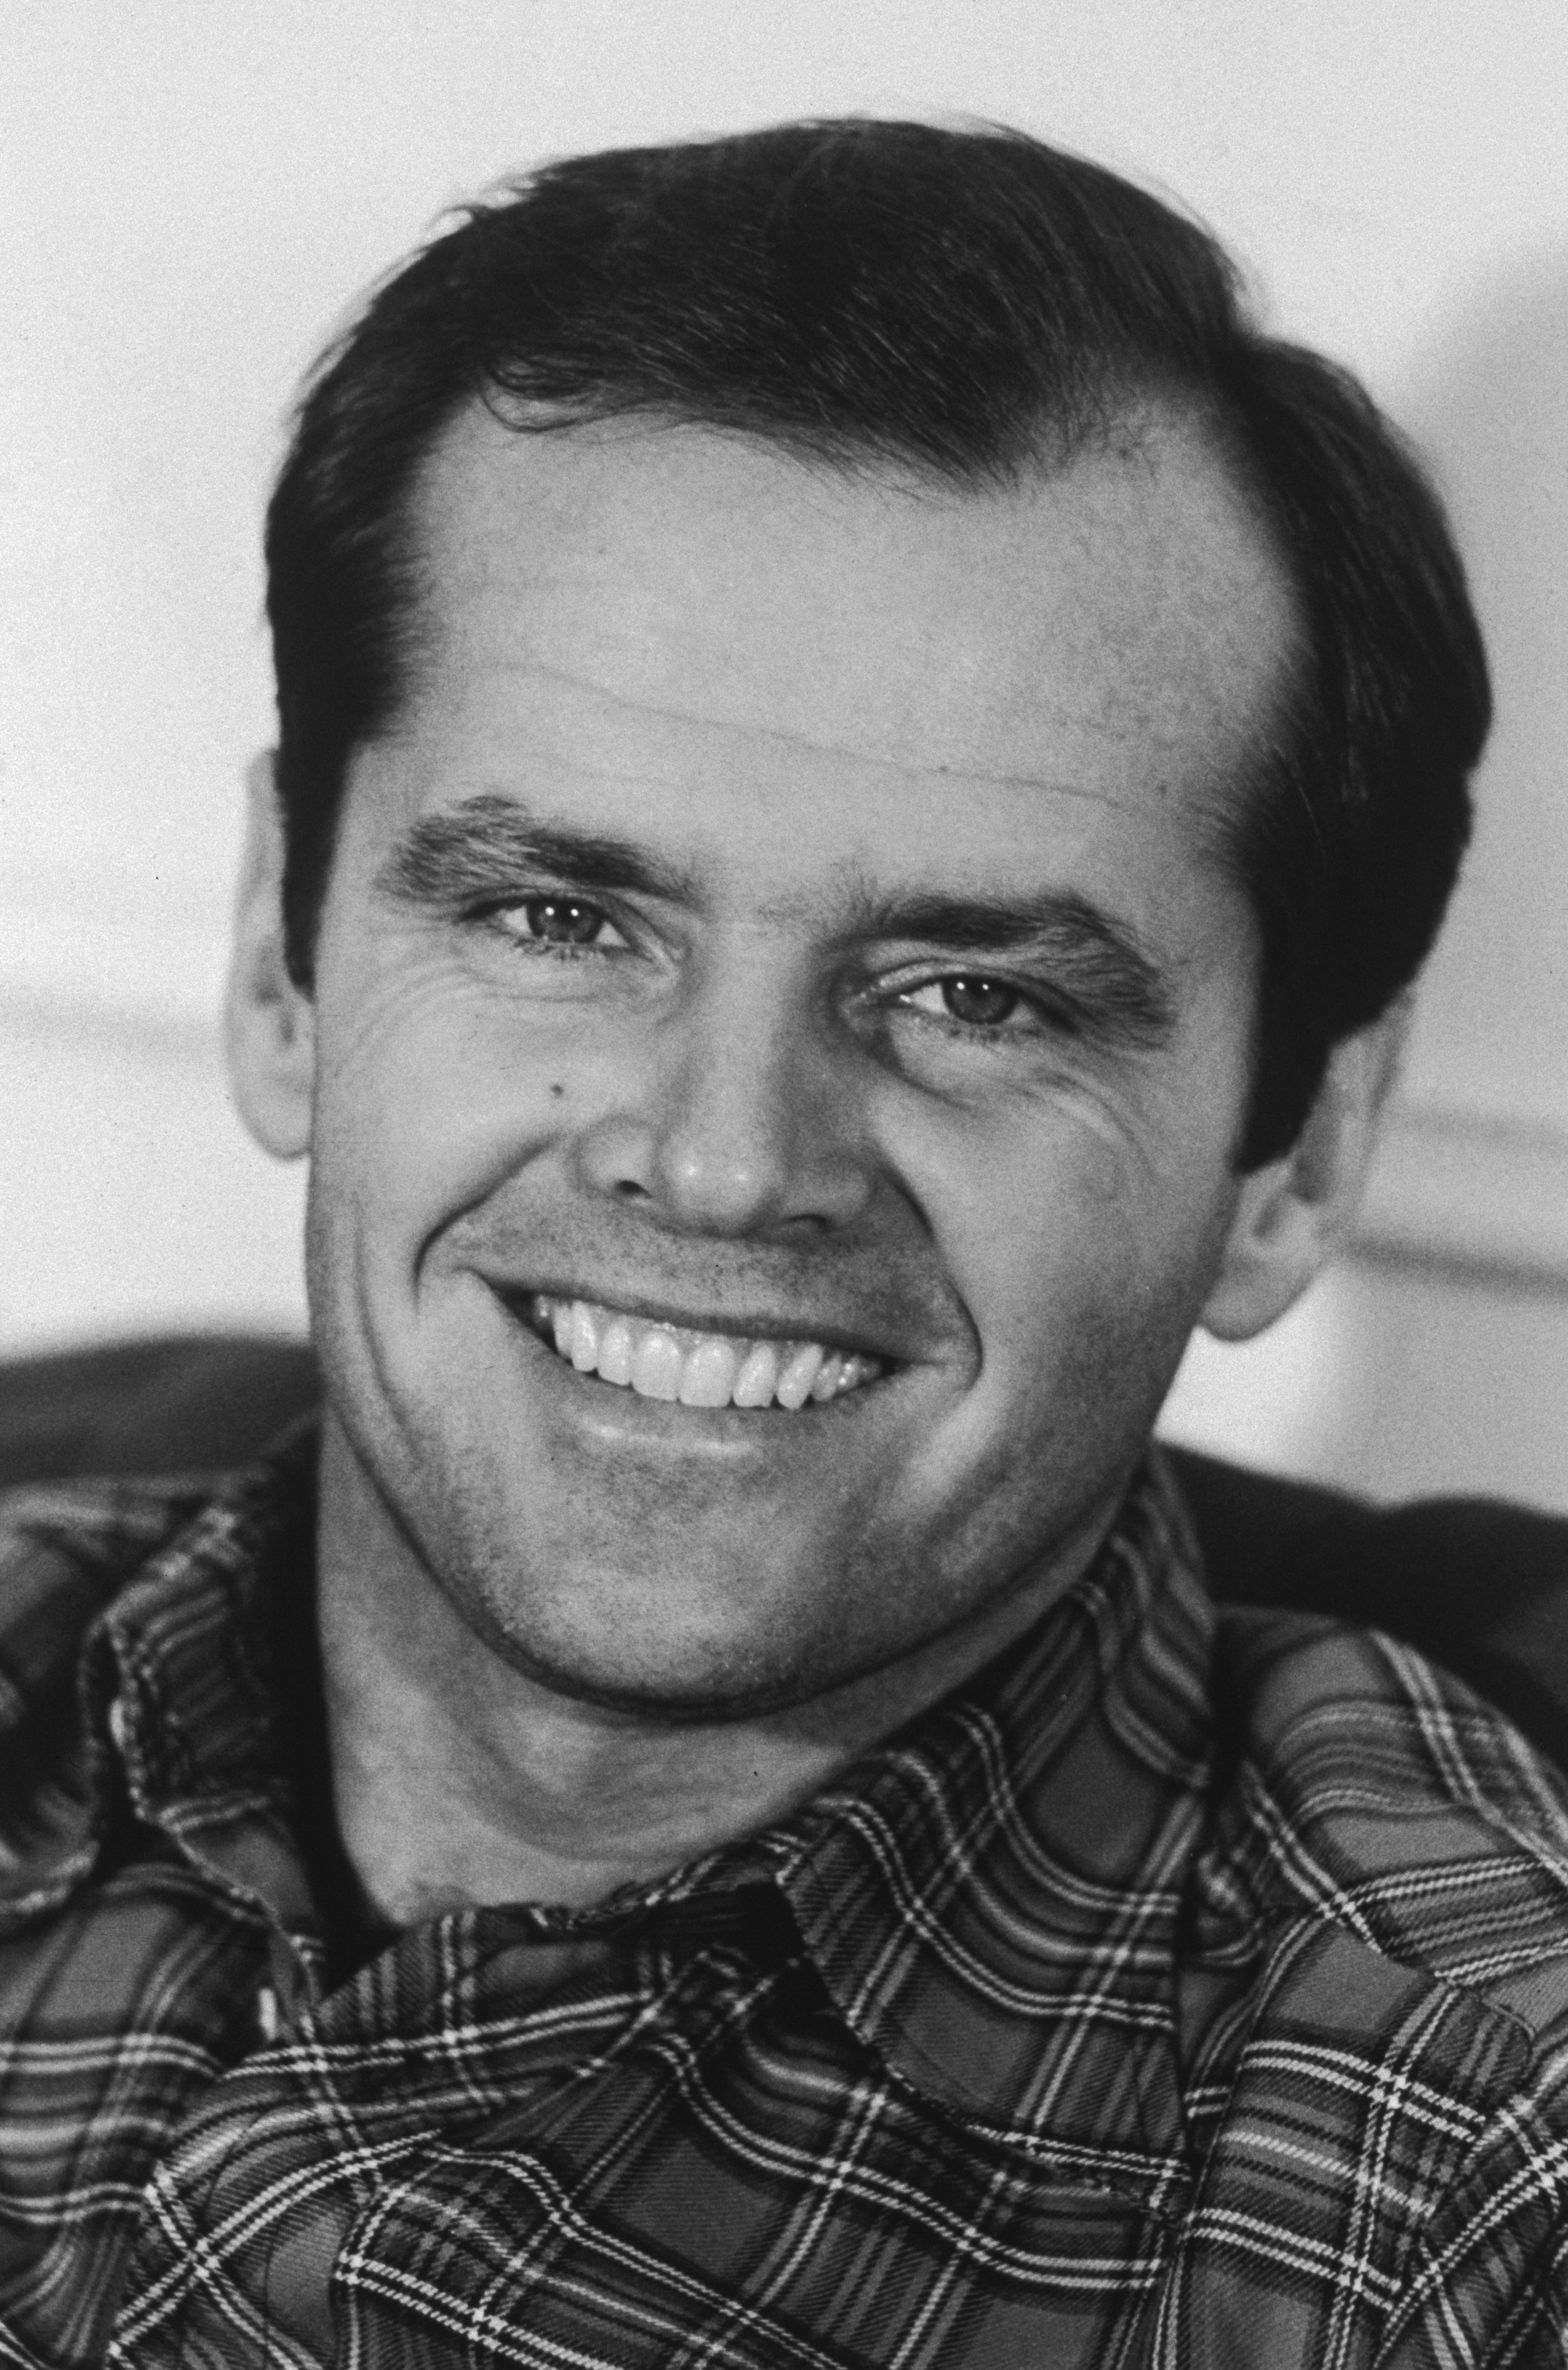 Portrait de février 1974 de l'acteur américain souriant | Source : Getty Images